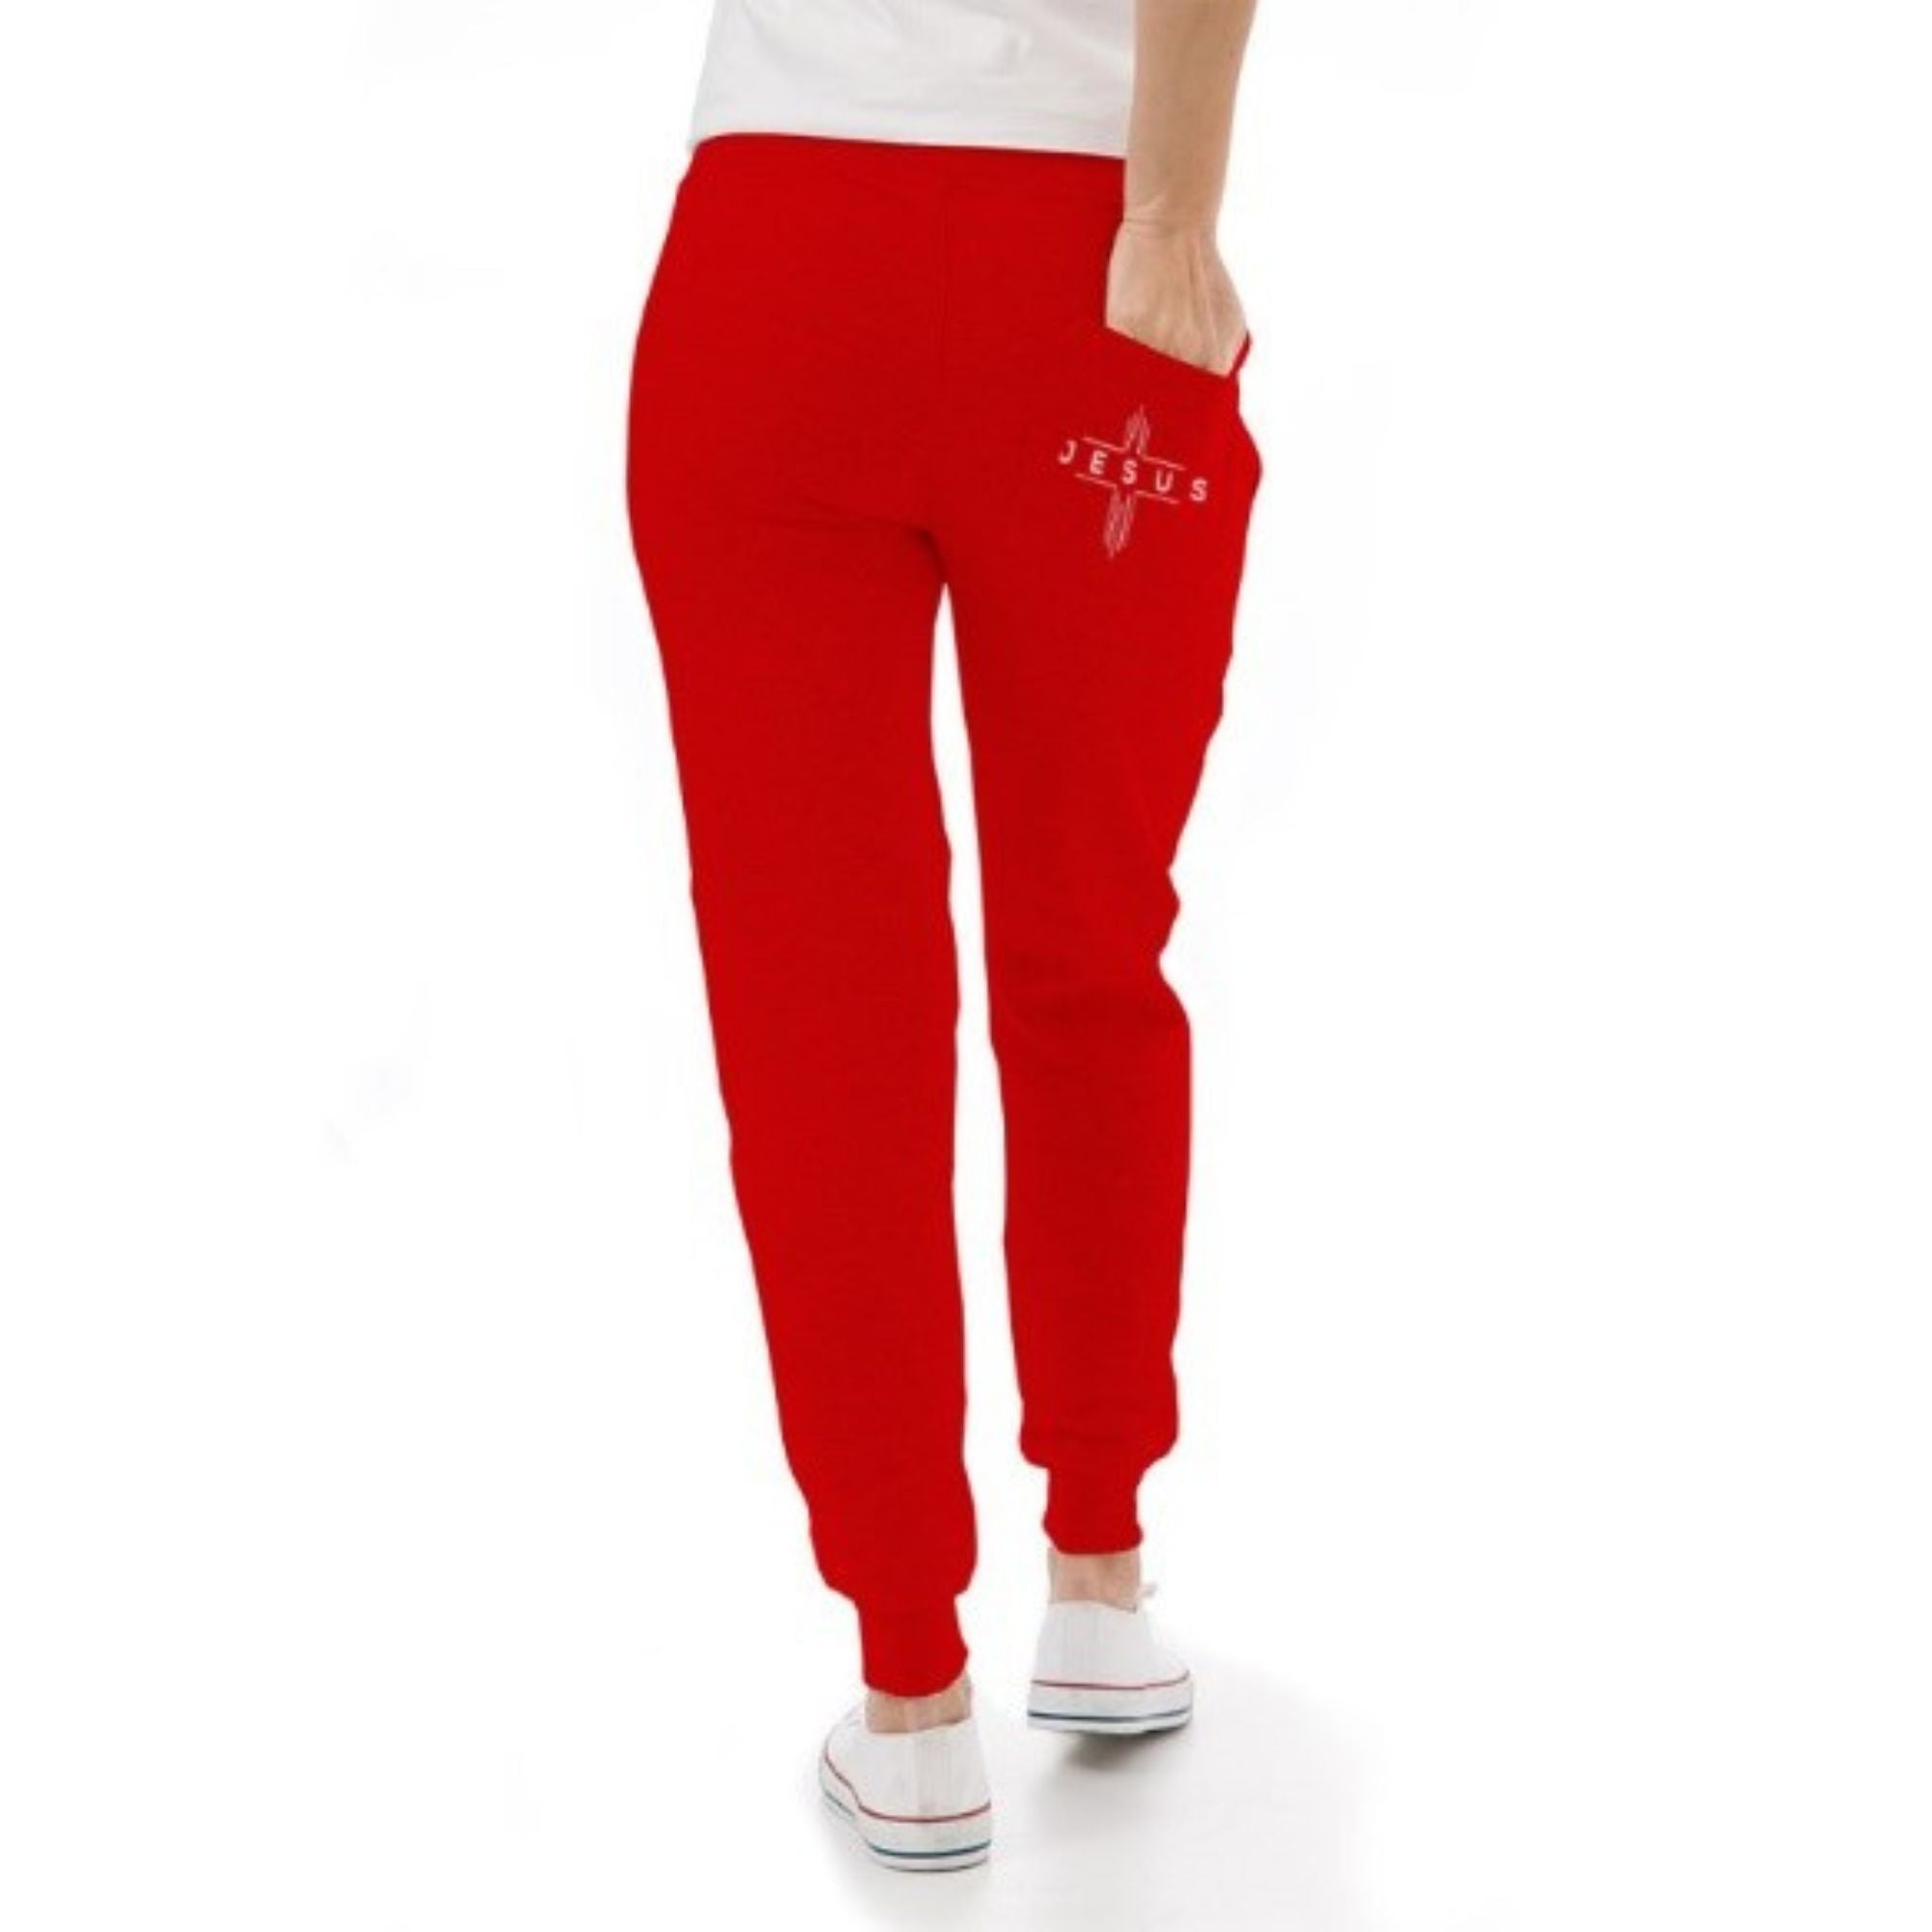 Jesus Cheveron Cross Women's Unisex Premium Fleece Joggers - Black / Red - Matching Champion T-shirt Available Size: S Color: Black Jesus Passion Apparel